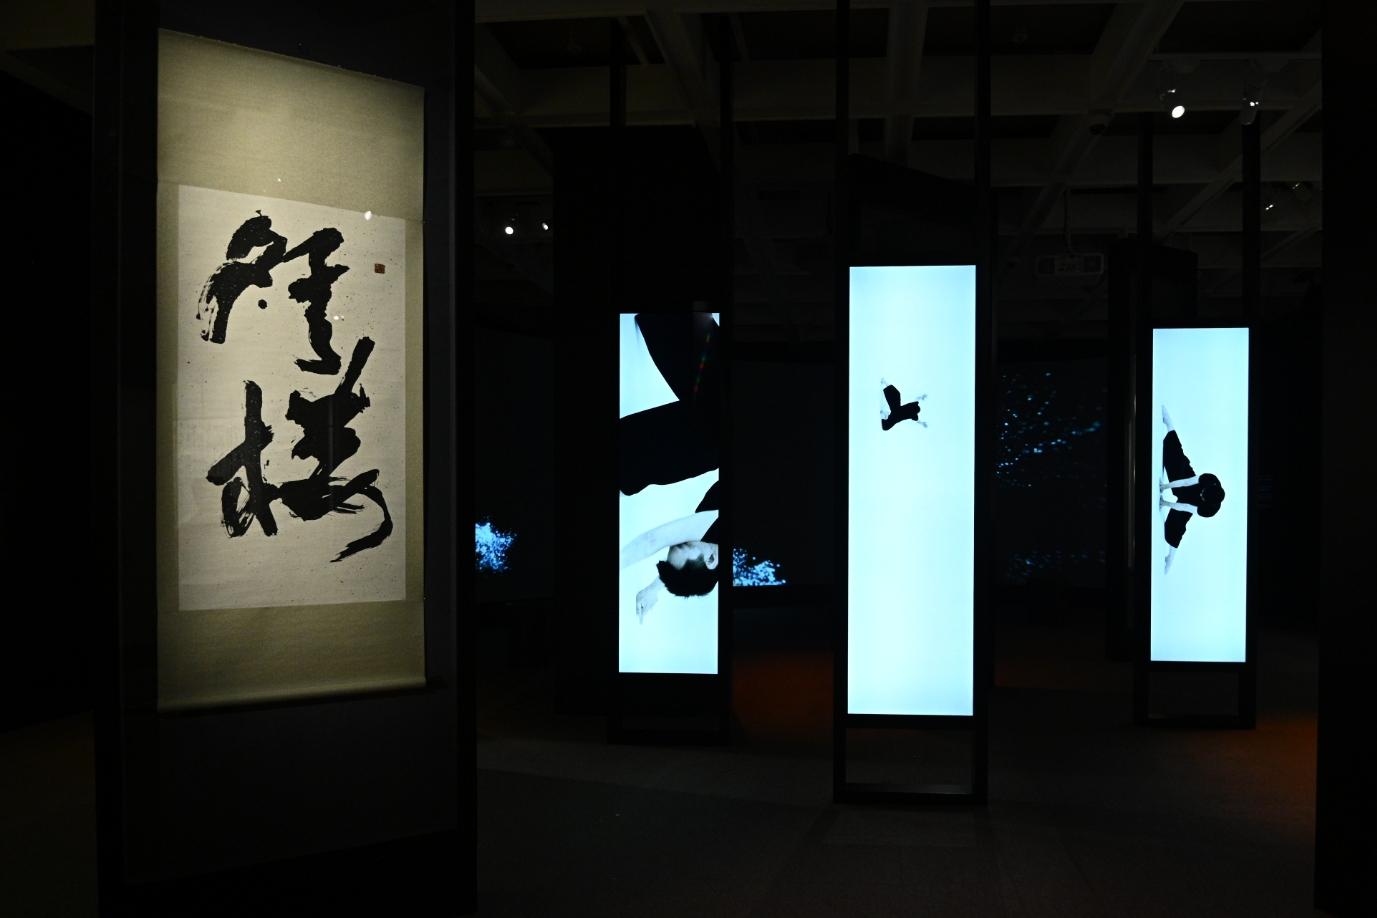 香港藝術館明日（七月二十二日）起舉行「漢字城韻──書法中的詩舞畫樂」展覽。圖示藝術家葉愷的書法作品《榜書「登樓」》（左）及導演卓翔和編舞家王榮祿創作的舞蹈影像（右），舞者以身體的力量、姿態及律動回應書法的動勢。